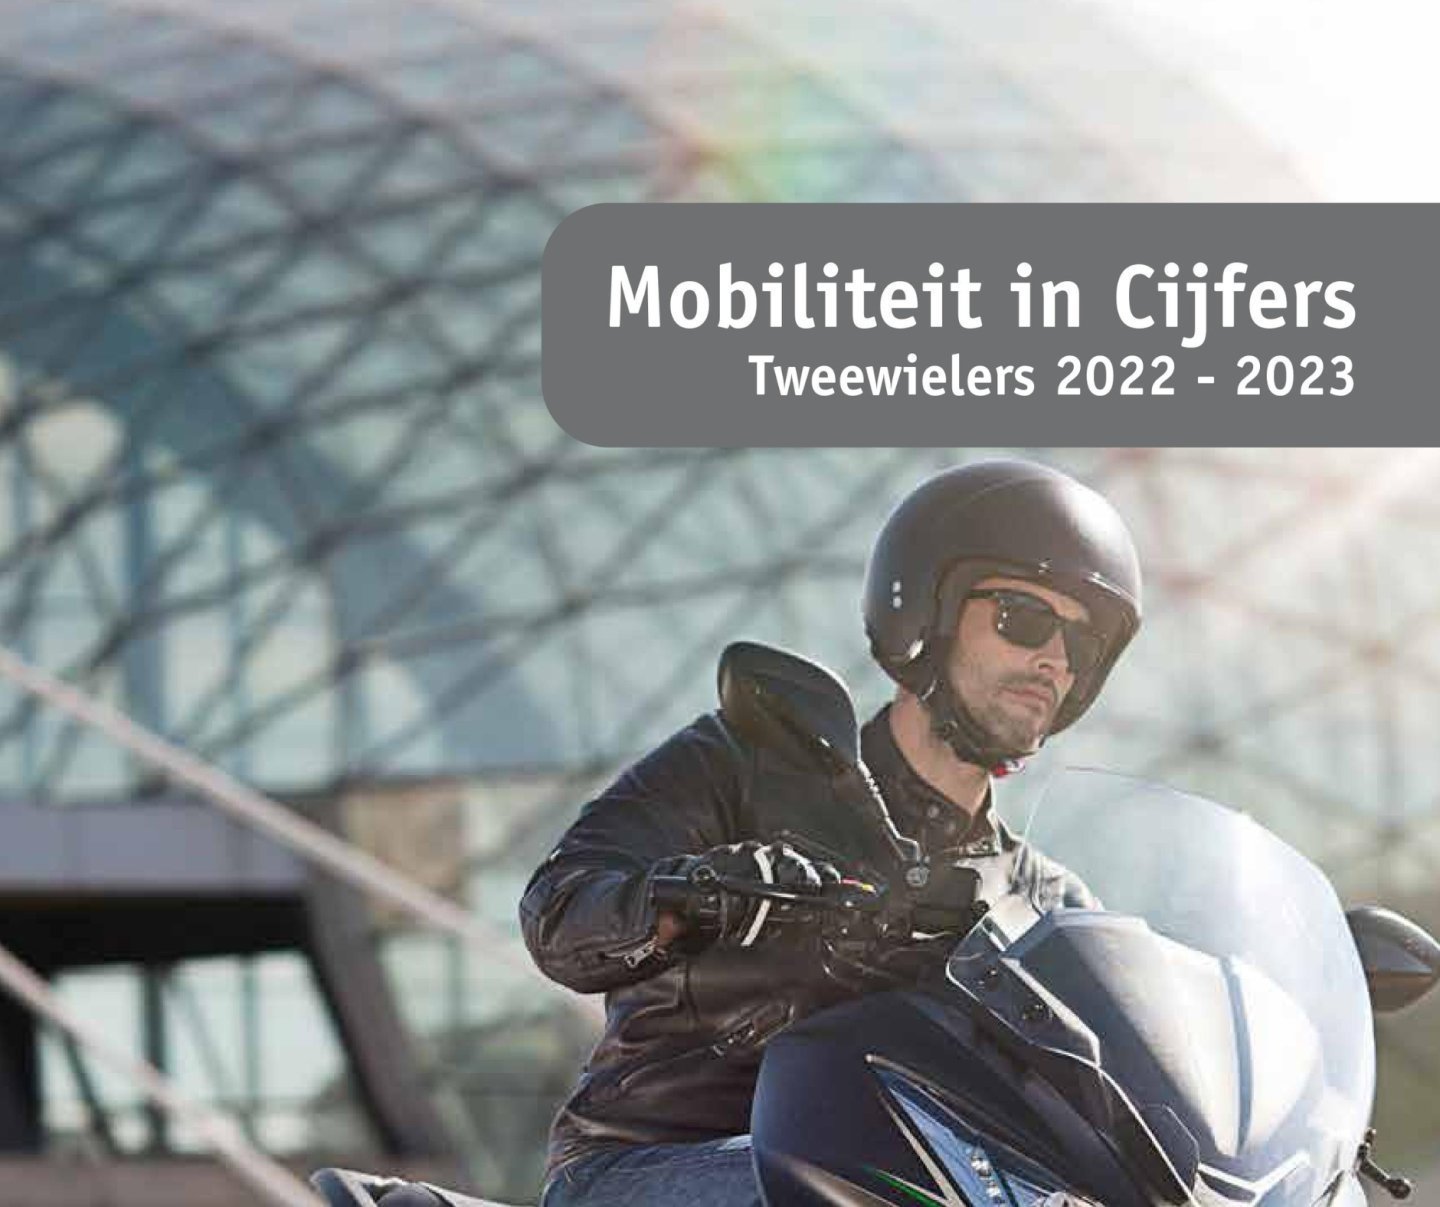 Mobiliteit in Cijfers Tweewielers 2022 - 2023